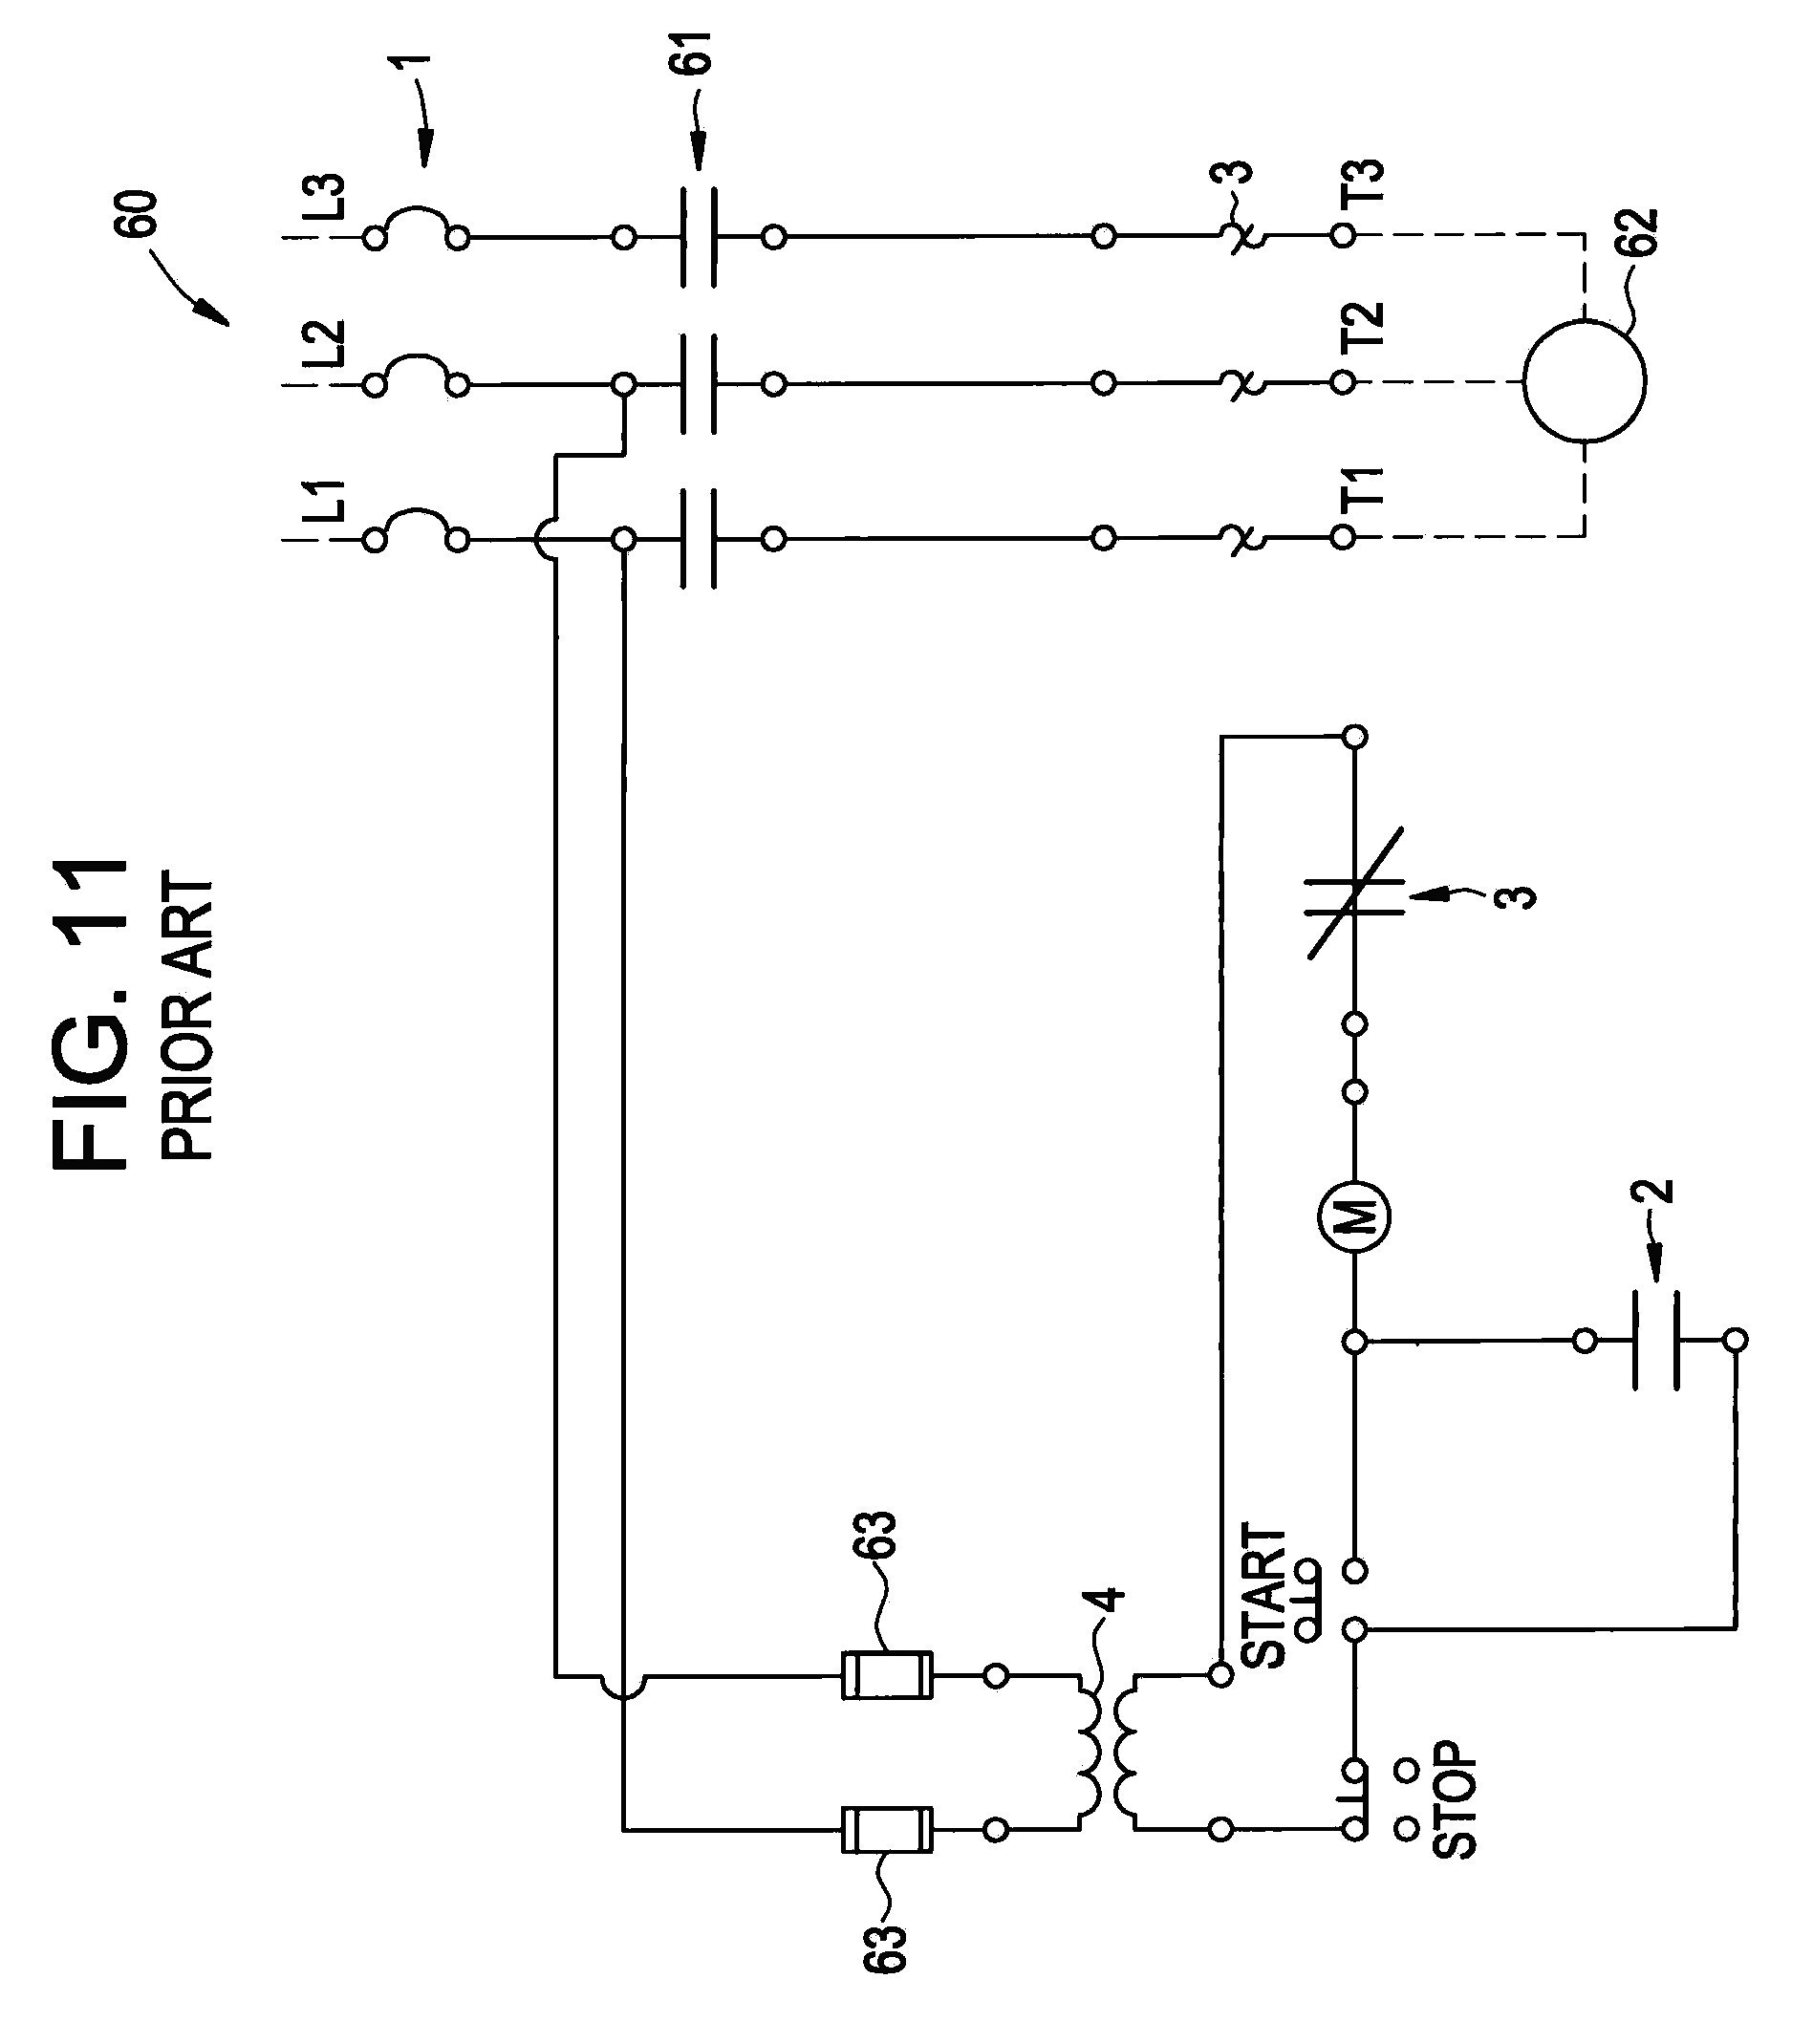 Square D Manual Motor Starter Wiring Diagram Nema Motor Starter Wiring Diagram New Square D